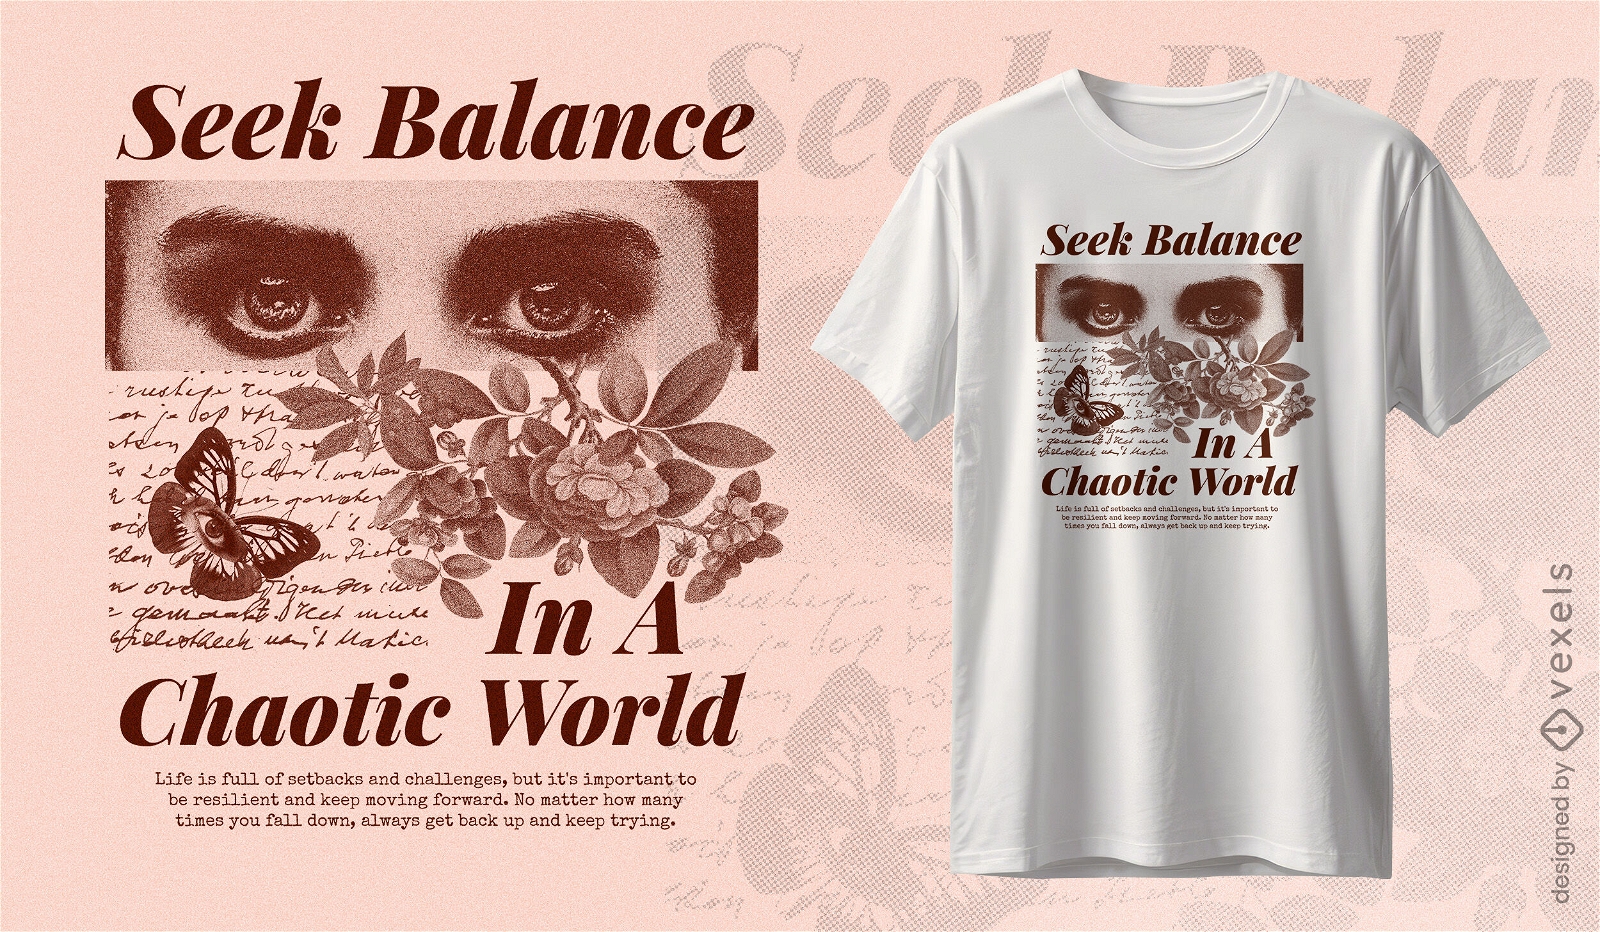 Busca el equilibrio en un dise?o de camiseta mundial ca?tico.